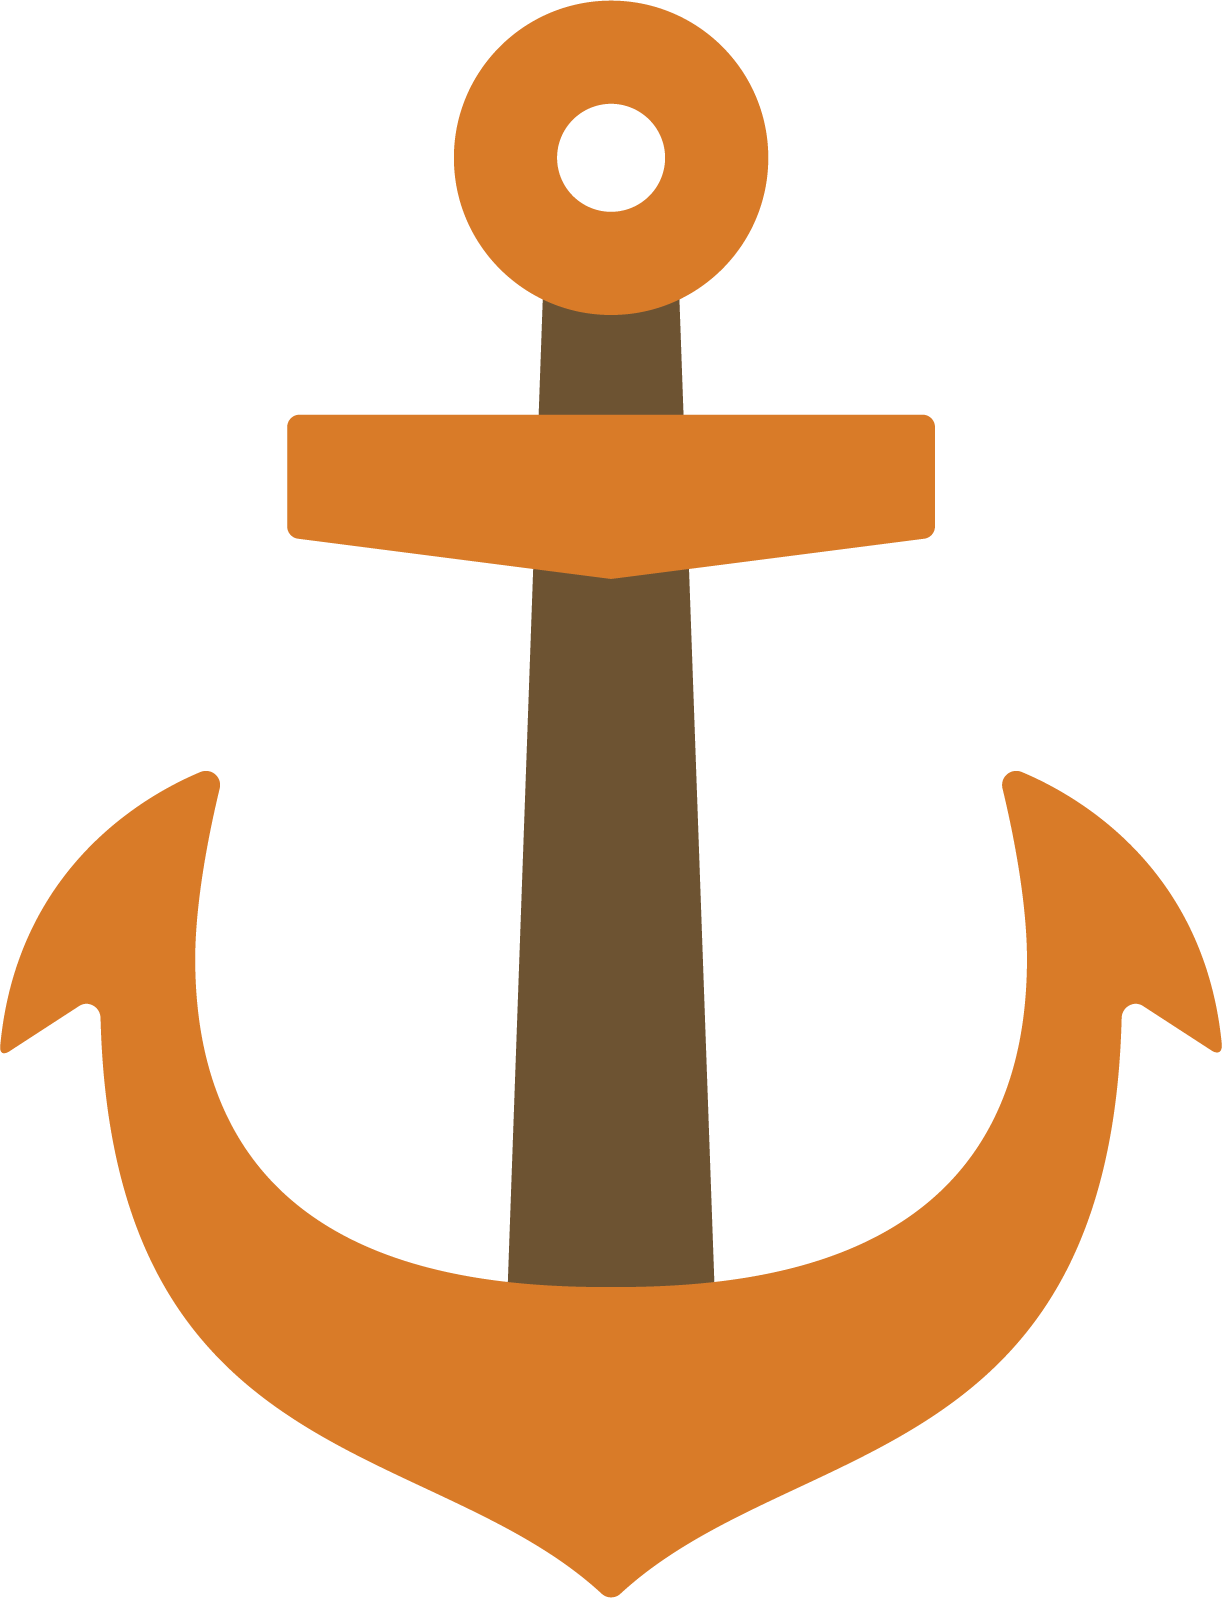 An animated orange ship anchor icon.